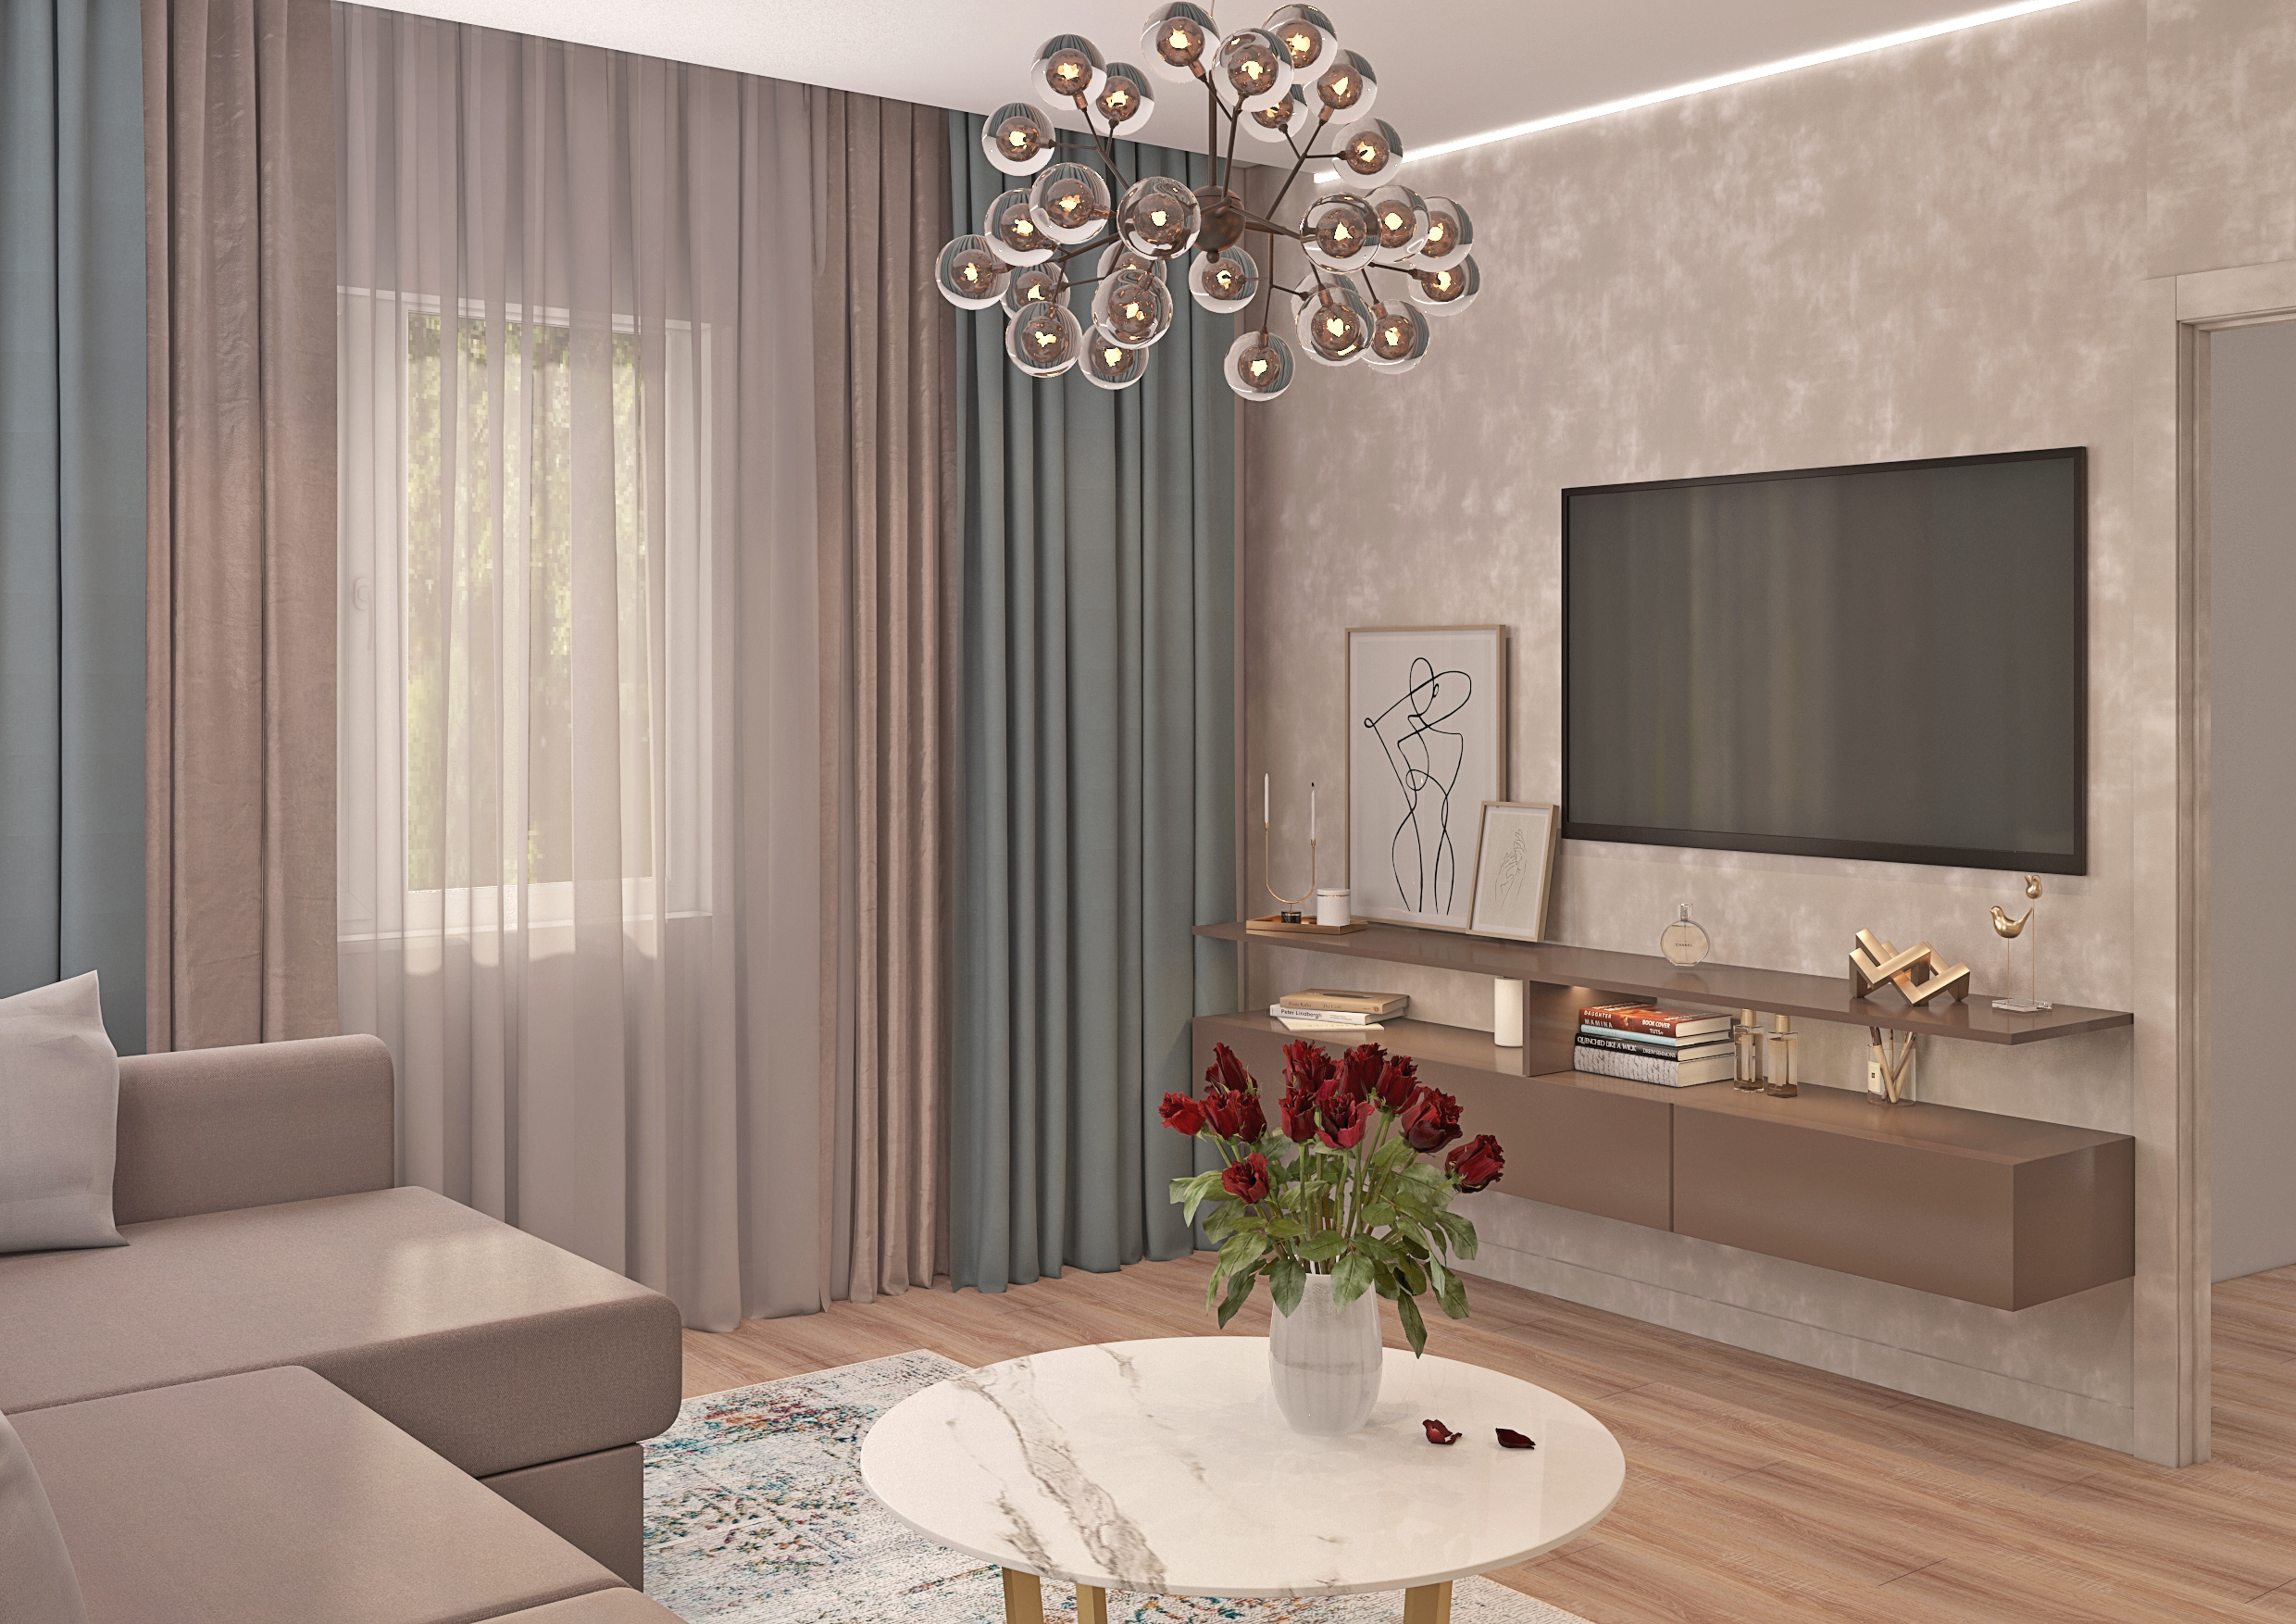 एक निजी घर में रहने वाले कमरे 3d max vray 3.0 में प्रस्तुत छवि